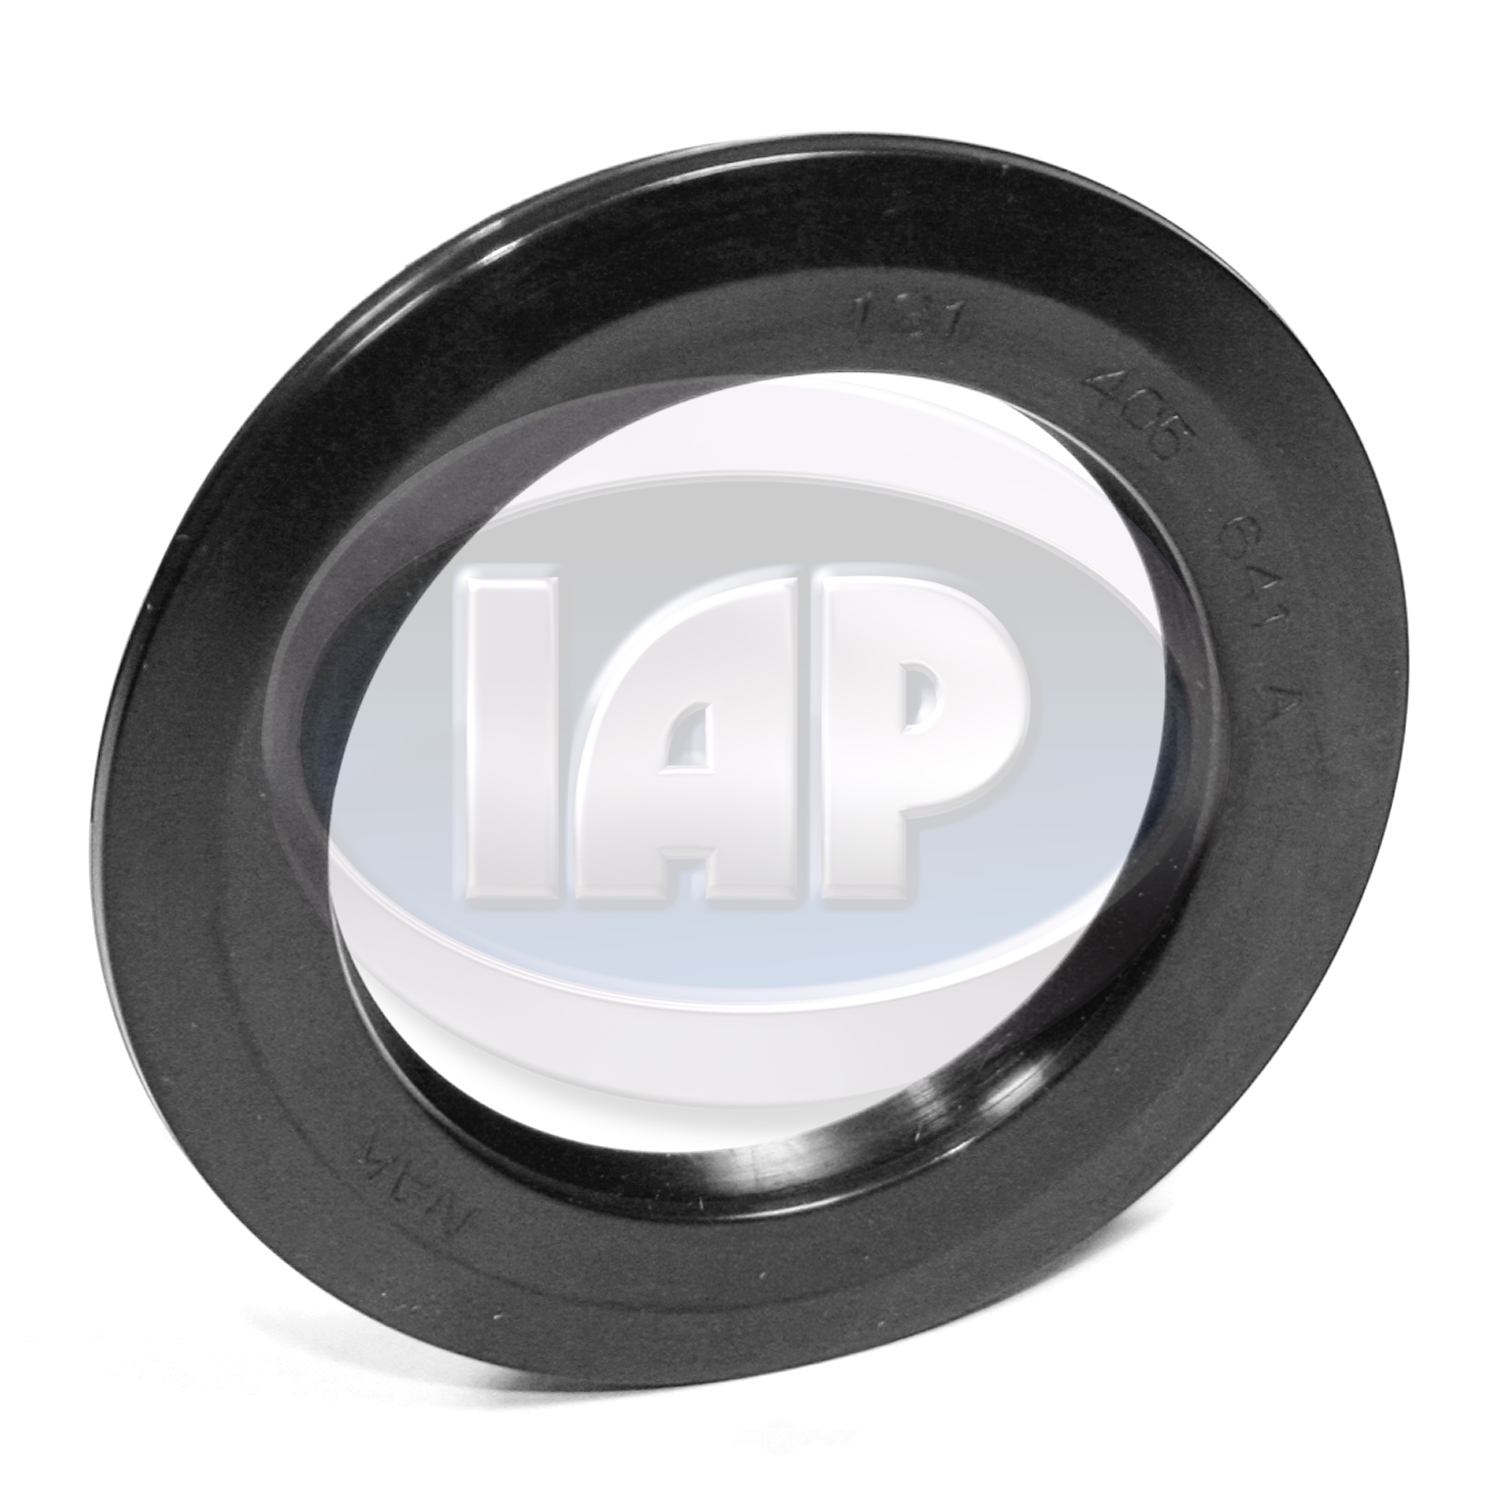 IAP/KUHLTEK MOTORWERKS - Wheel Seal - KMS 131405641A